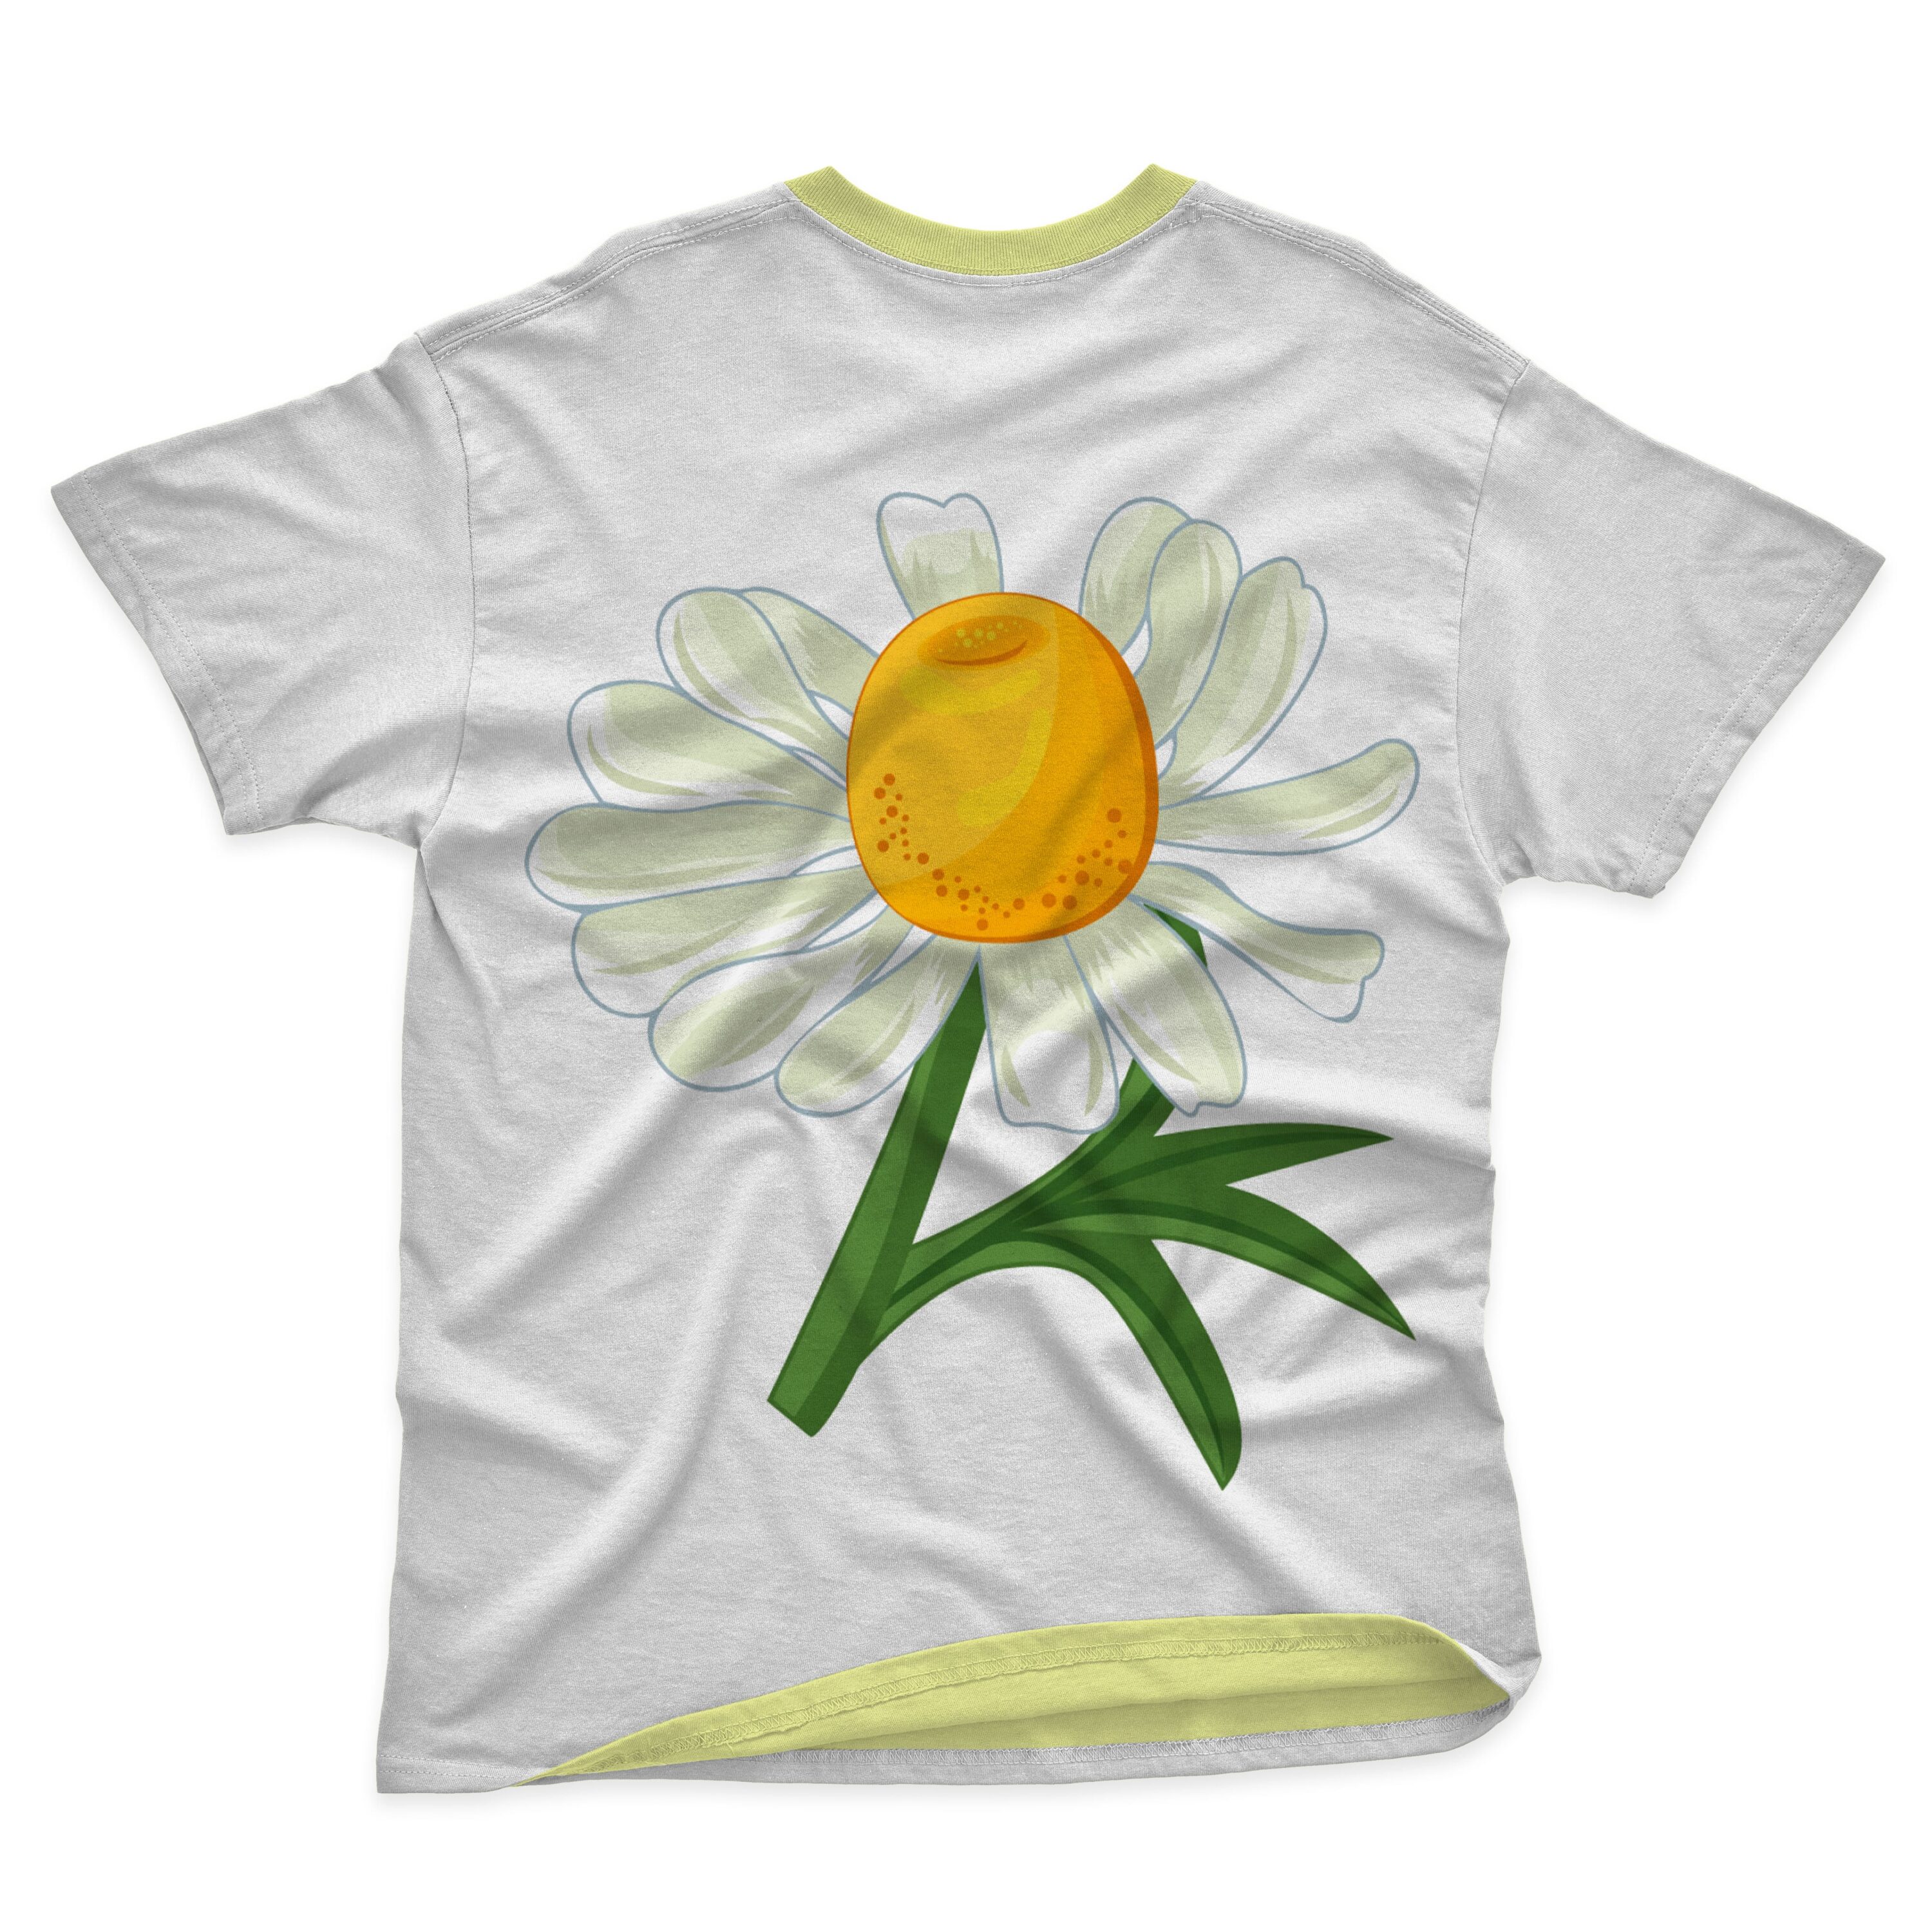 Cute daisy on the t-shirt design.